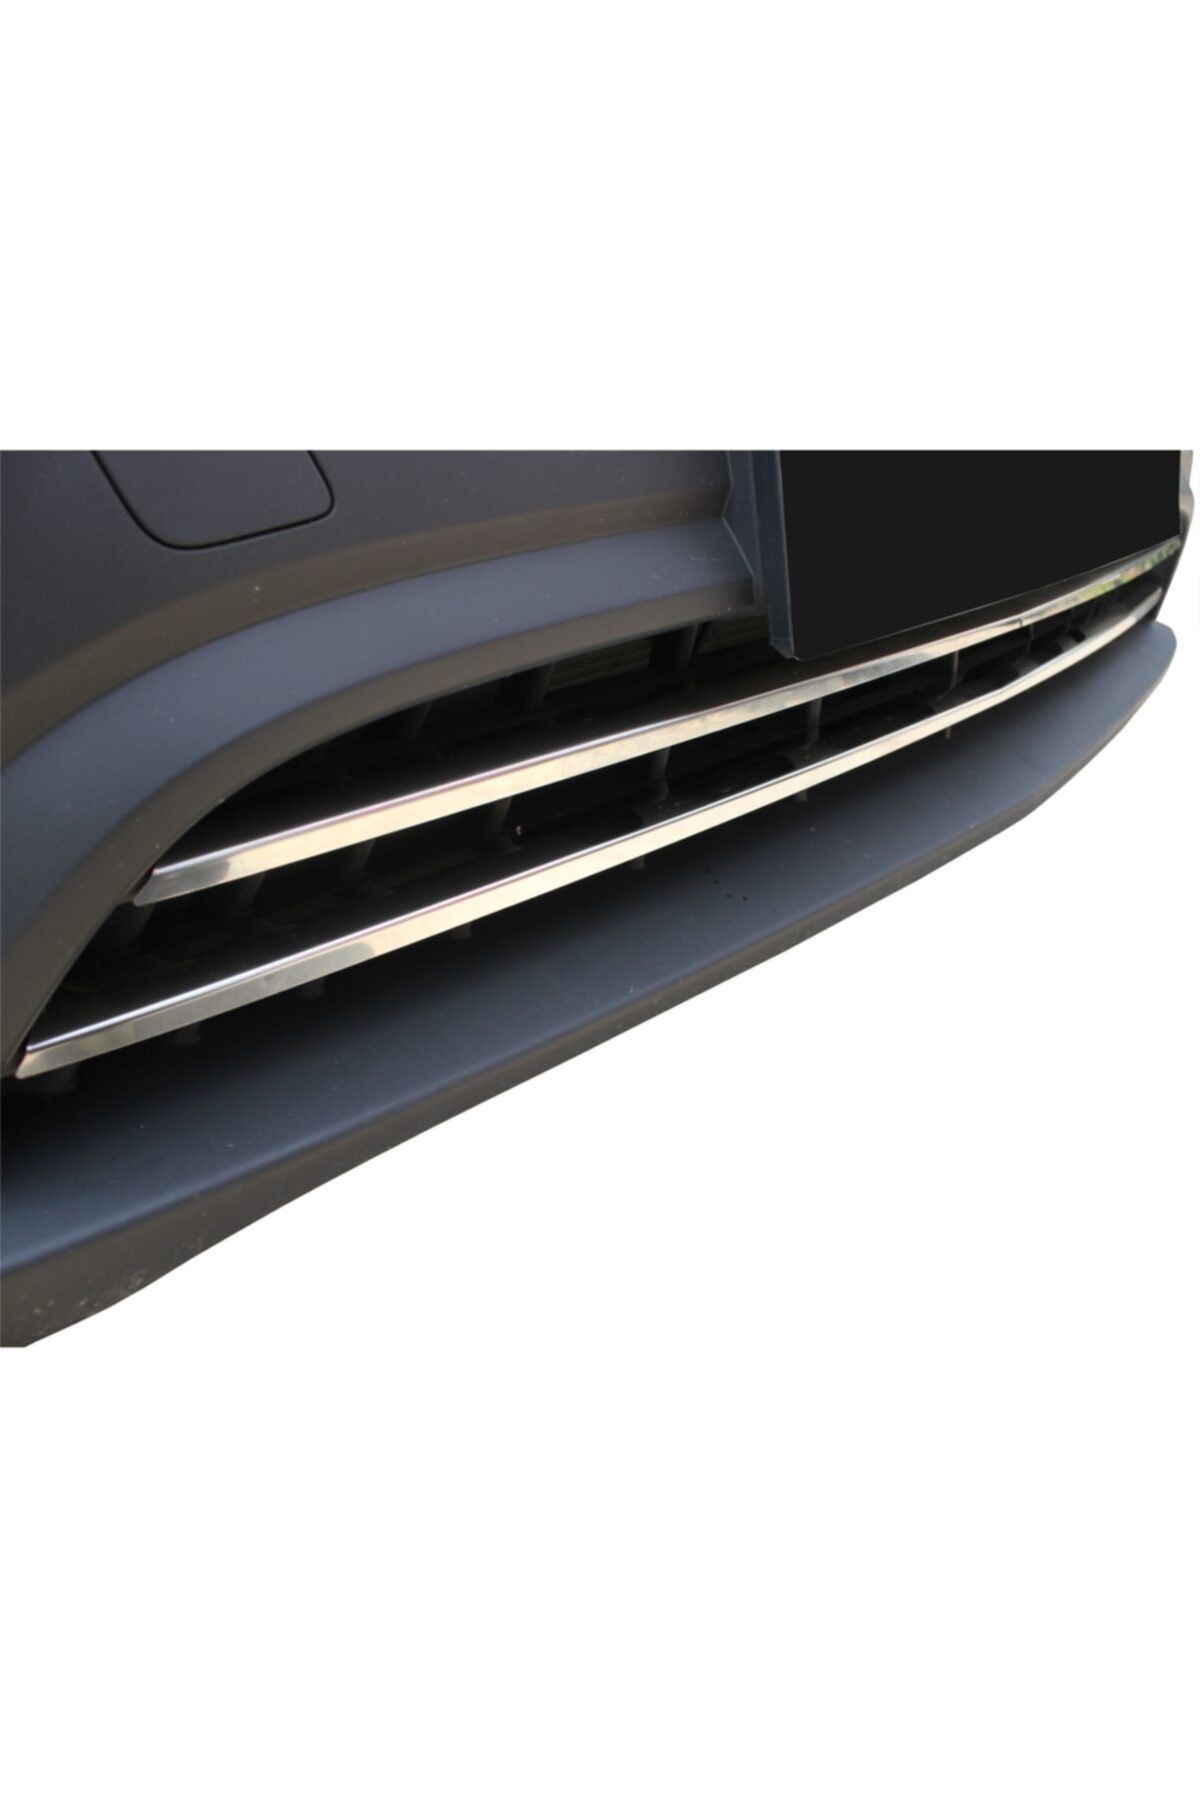 Mercedes Vito Ön Tampon Çıtası Krom 2 Prç. 2015 Ve Sonrası